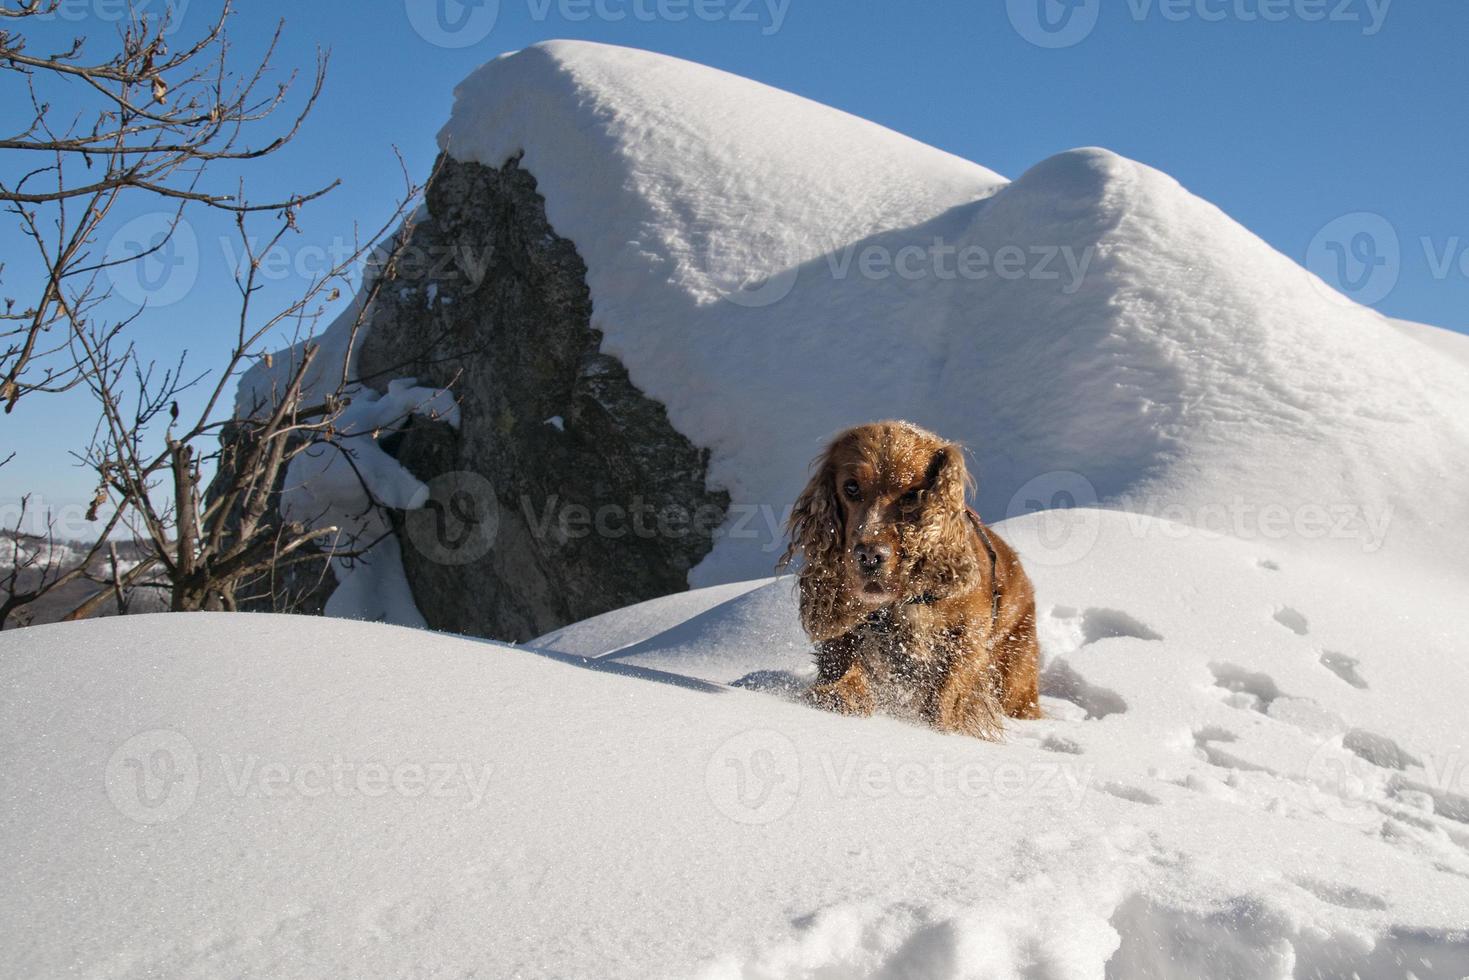 cachorro mientras juega en la nieve foto